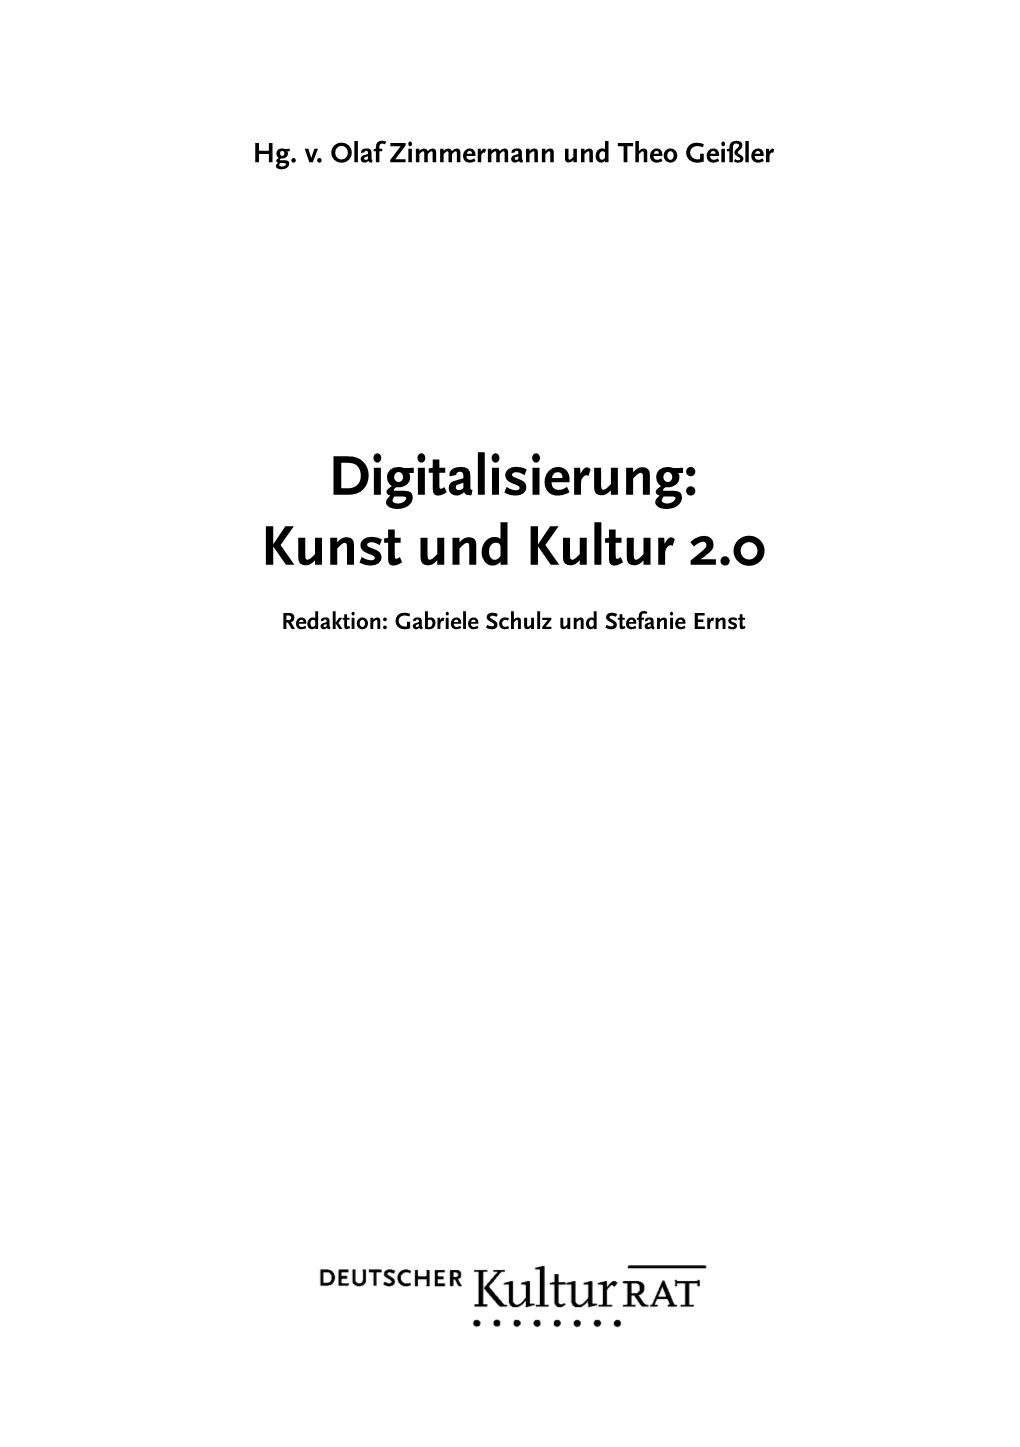 Digitalisierung: Kunst Und Kultur 2.0